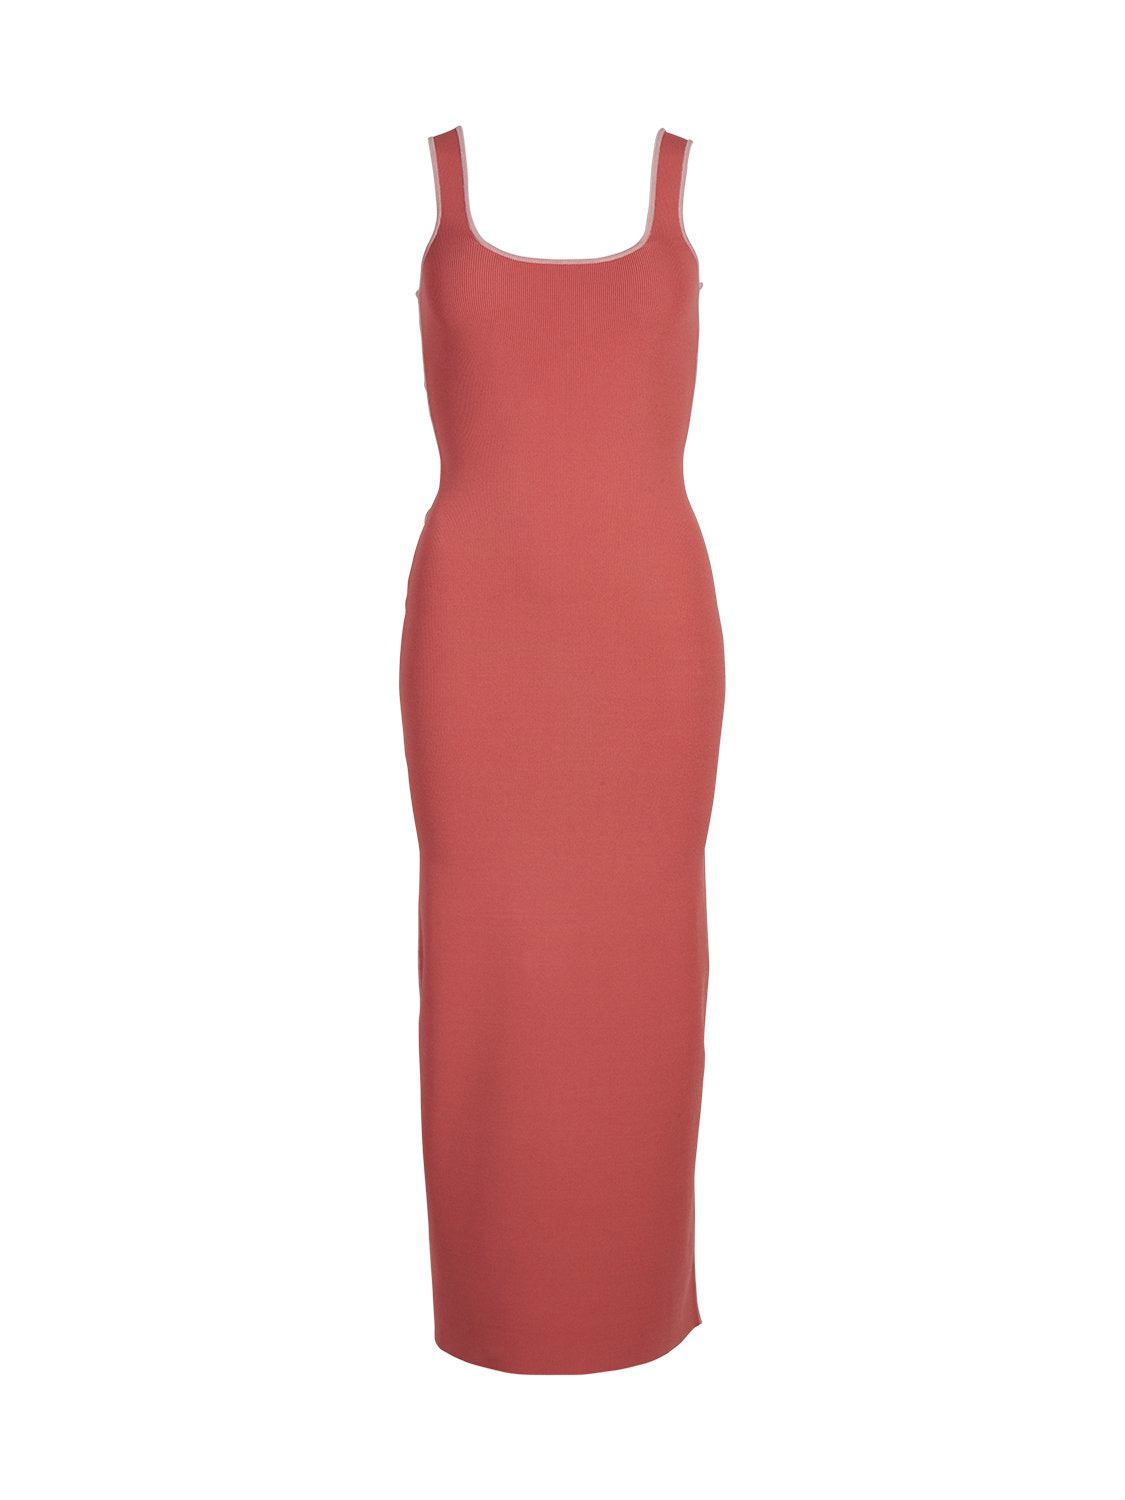 Evie Luxe Knit Maxi Dress - Cinnabar/ Primrose